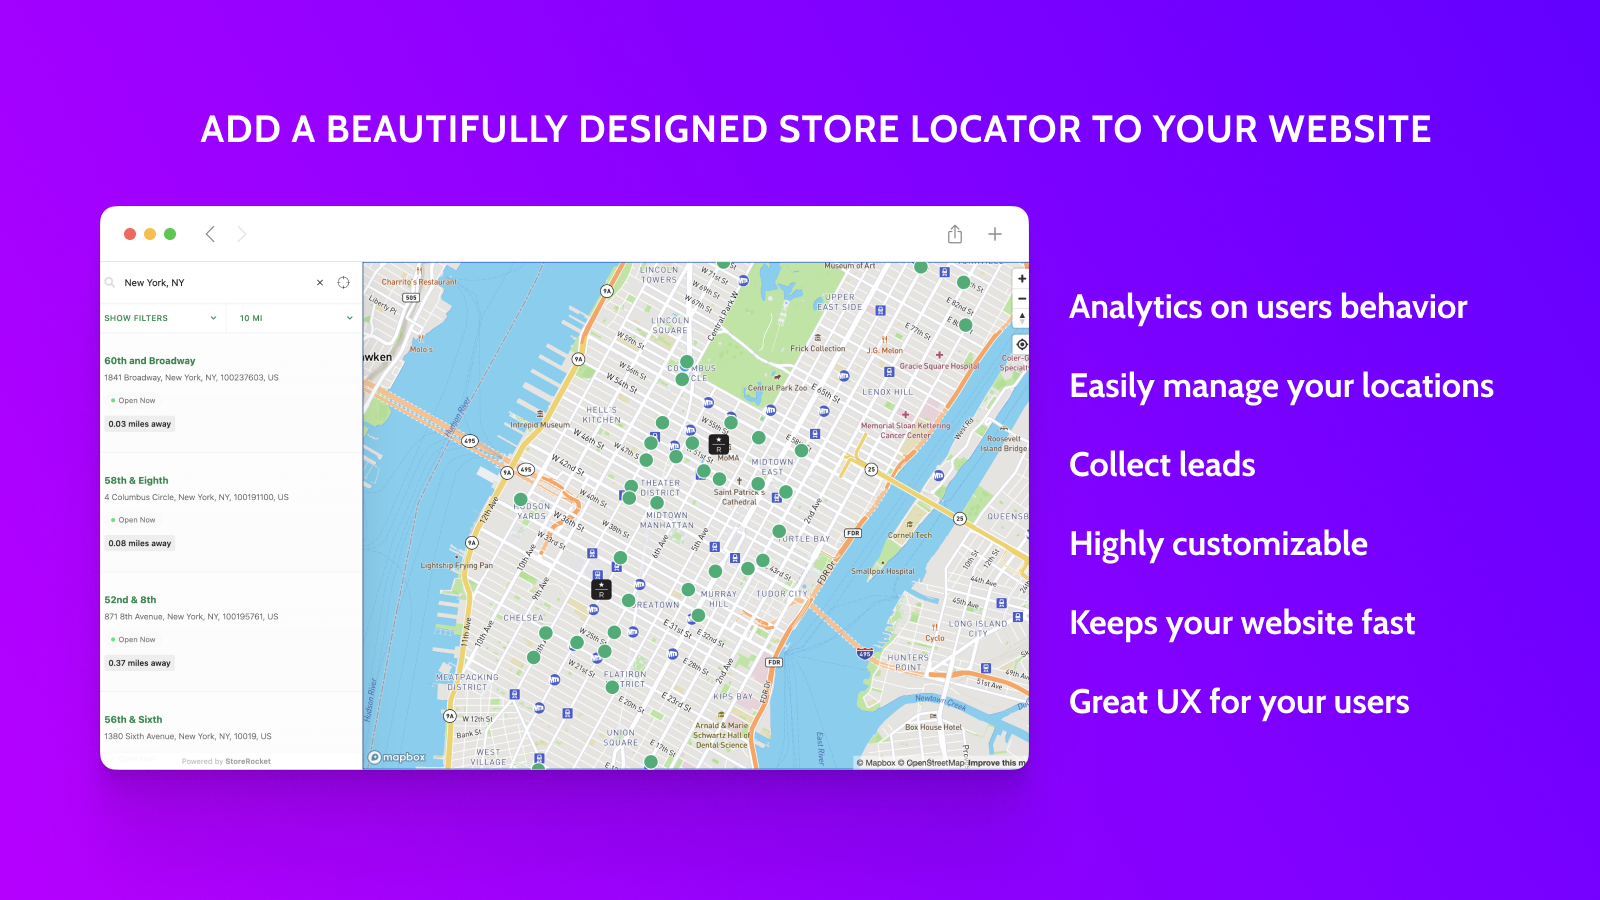 Voeg een prachtig ontworpen winkelzoeker toe aan uw website!